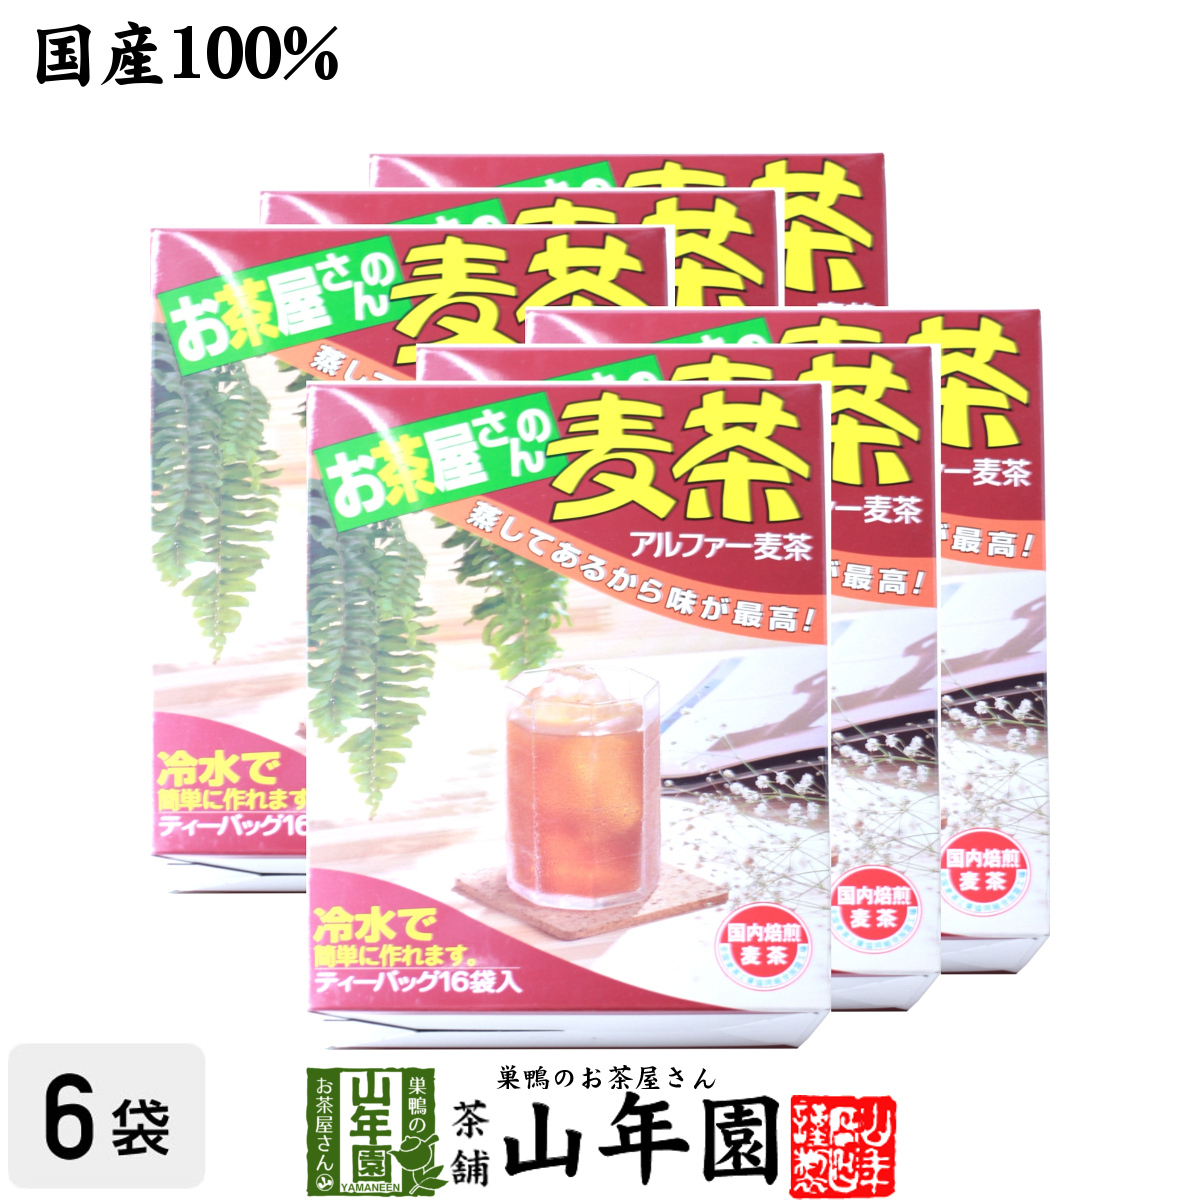 健康茶 むぎ茶 10g×16袋×6箱セット 国産 麦茶 ムギ茶 ミネラル やさしい おいしい 送料無料_画像1